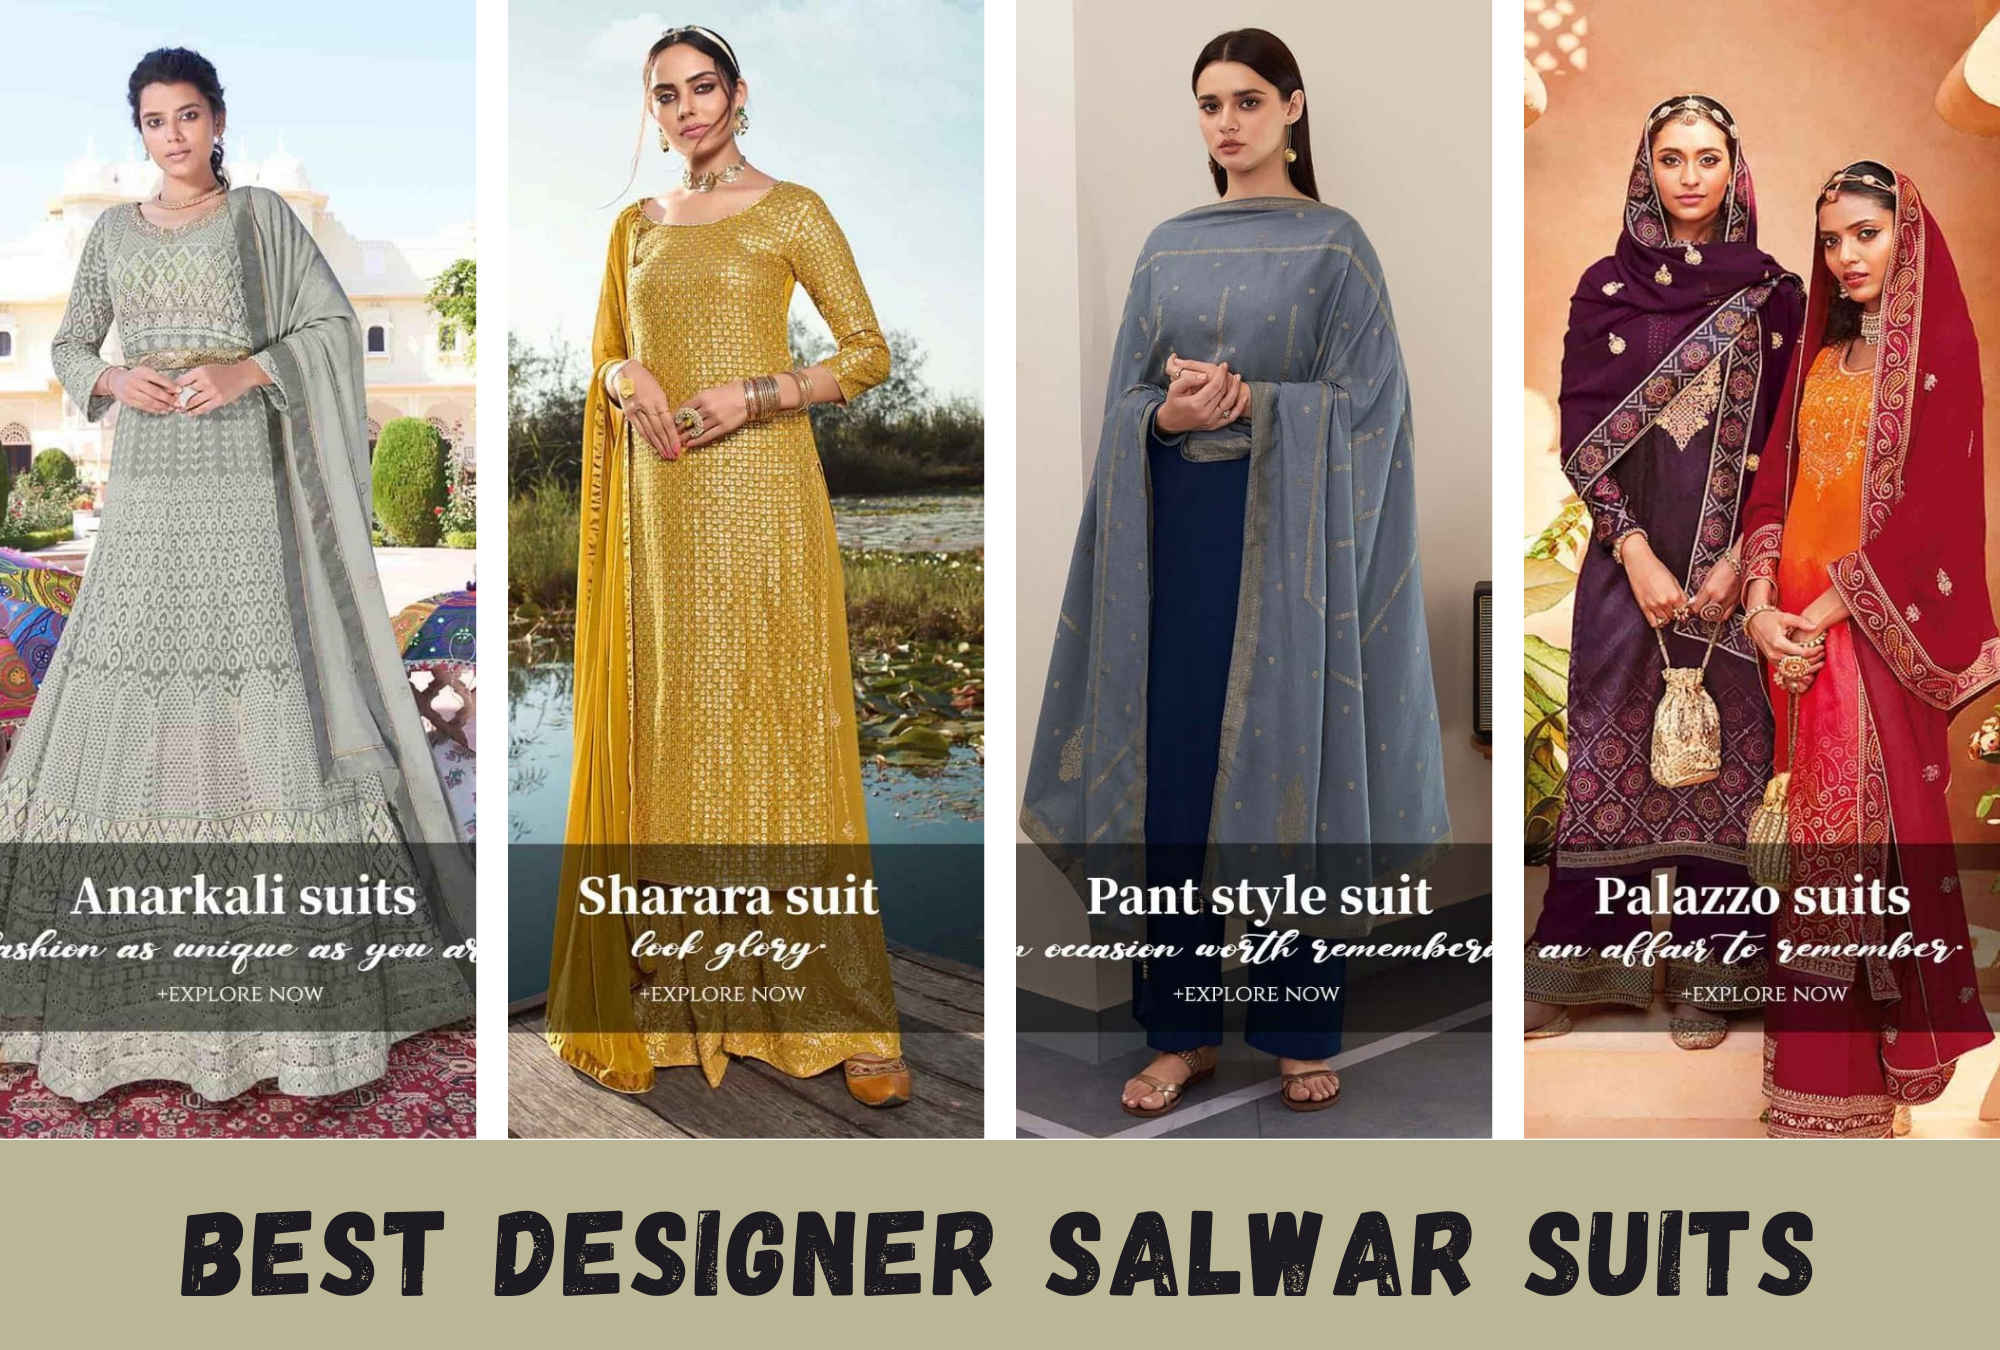 A Few Tips to Choose the Best Designer Salwar Suit